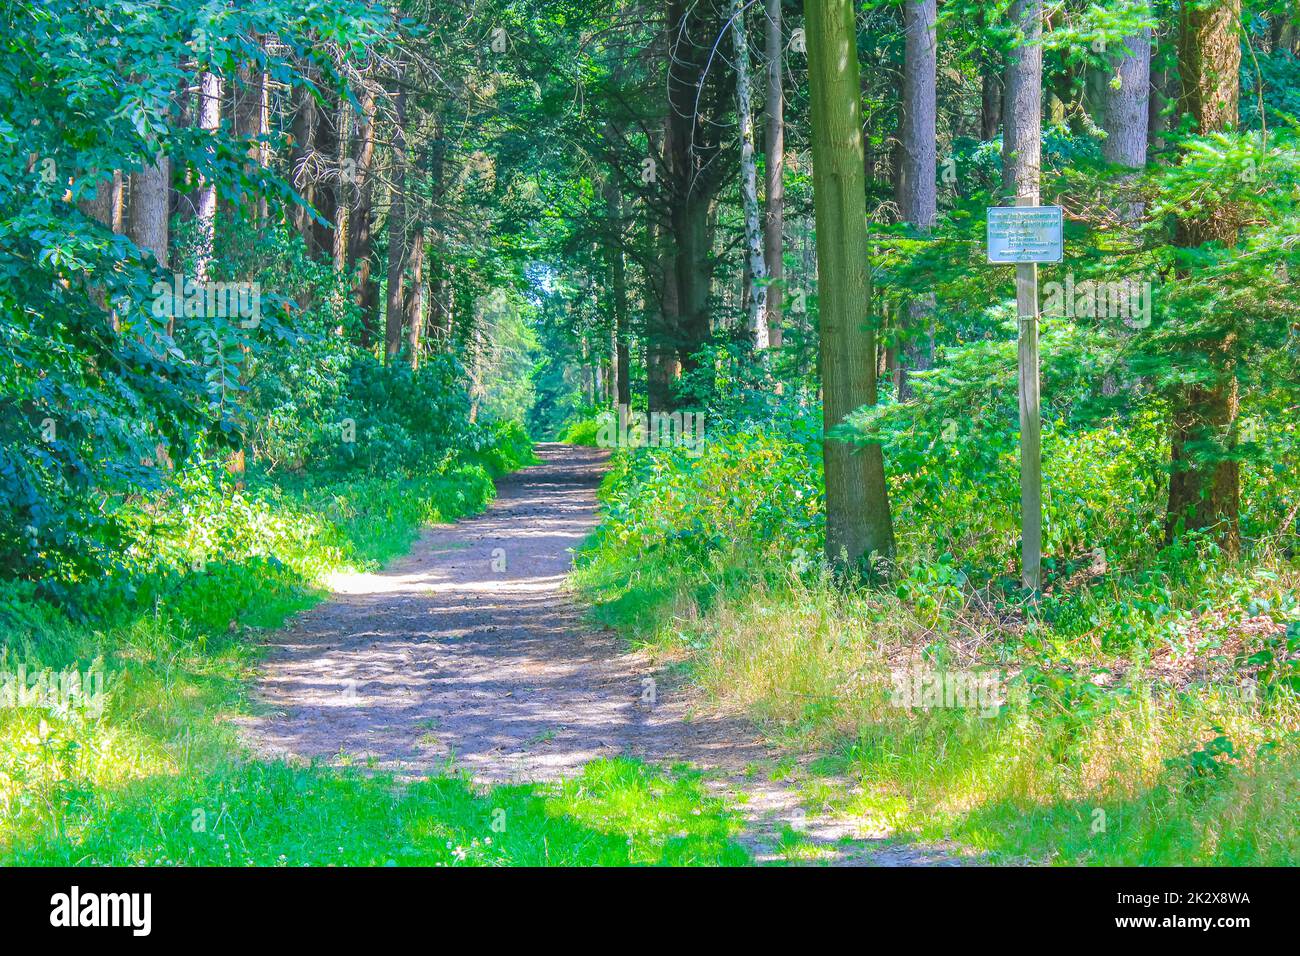 Vue panoramique naturelle avec sentier et plantes vertes arbres dans la forêt de l'hemmoor Hechthausen à Cuxhaven Basse-Saxe Allemagne. Banque D'Images